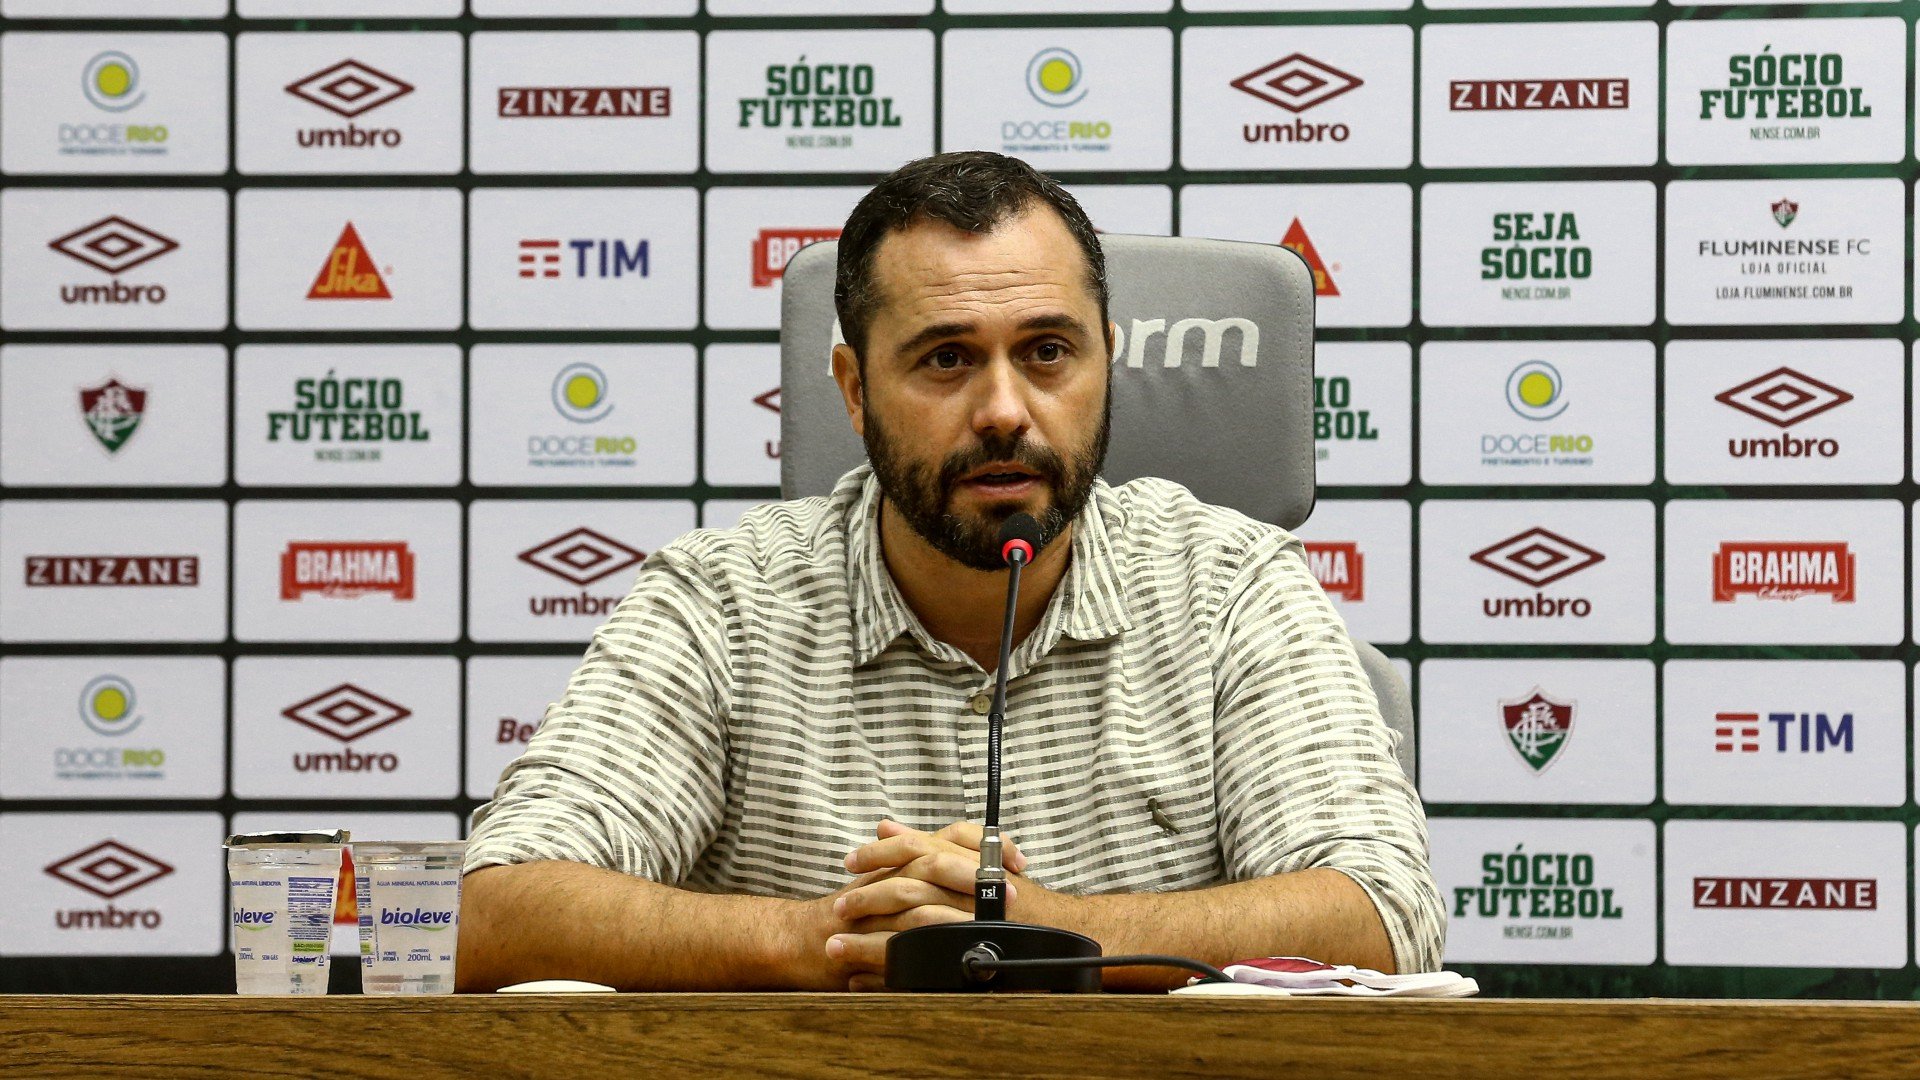 Destaque do Fluminense, atacante entra na mira de clube da Europa, diz jornalista